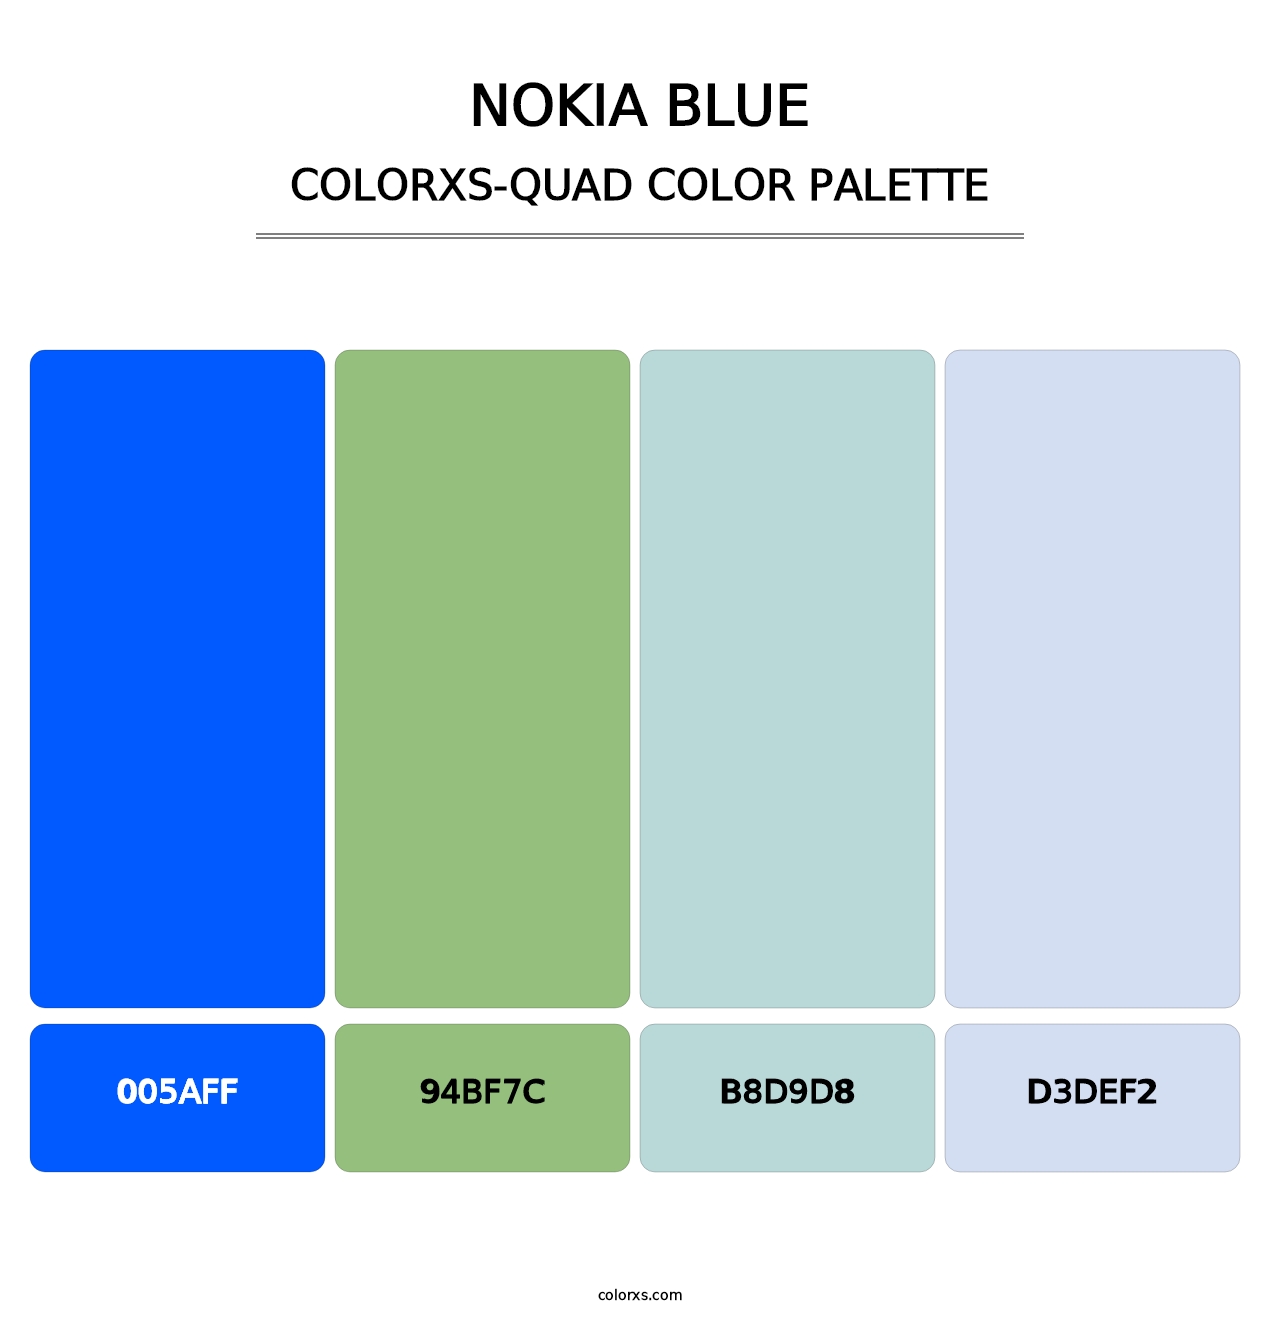 Nokia Blue - Colorxs Quad Palette